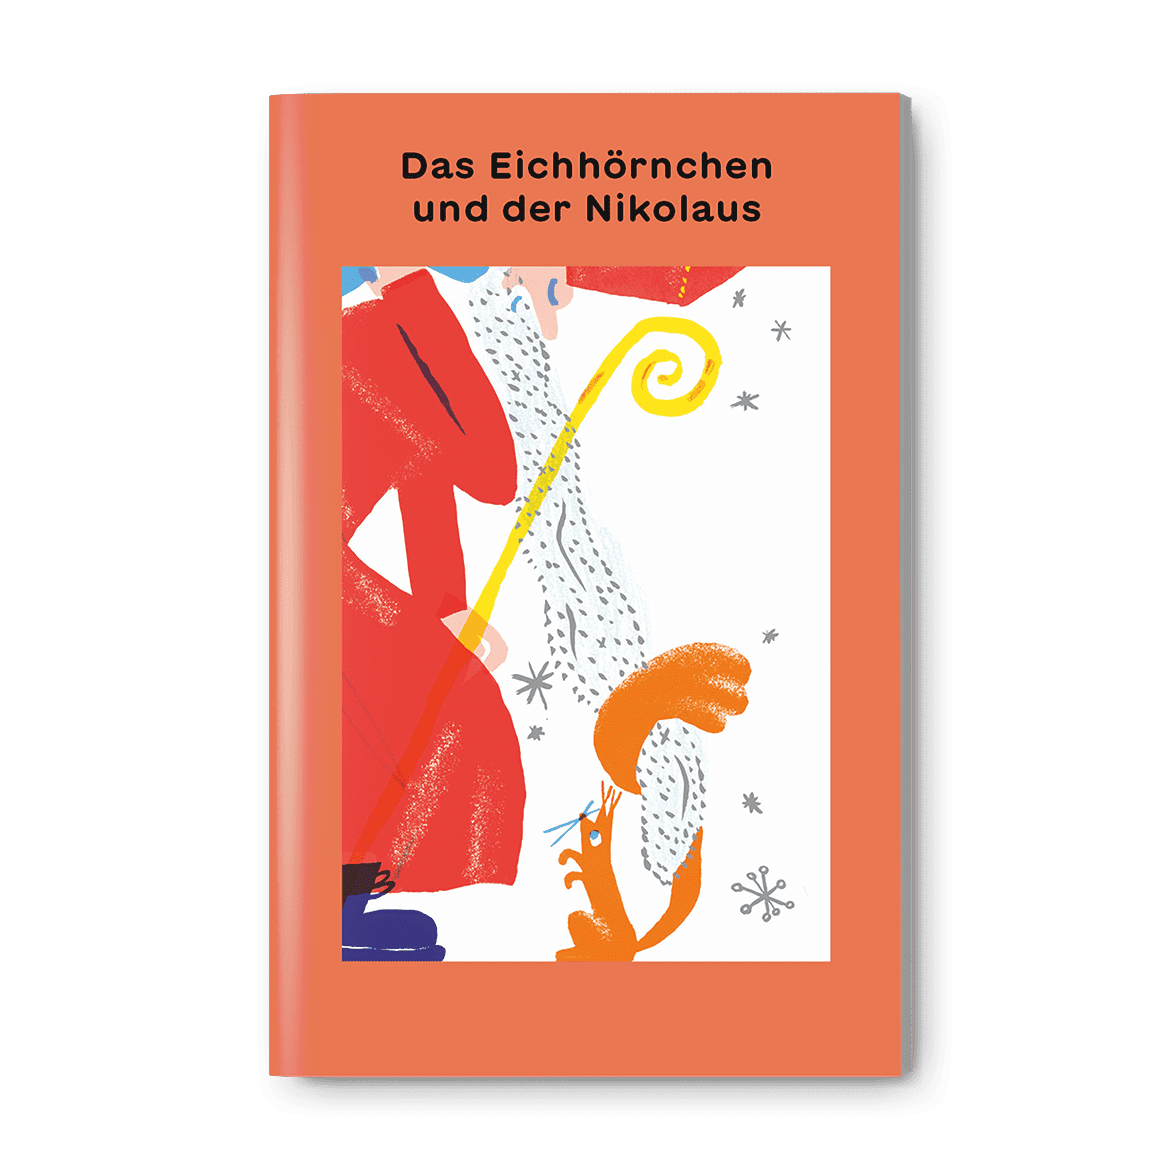 Das Eichhoernchen und der Nikolaus, ein Kinderbuch von Martha Pabst, Illustration von Isabel Peterhans, SJW Verlag, Advent